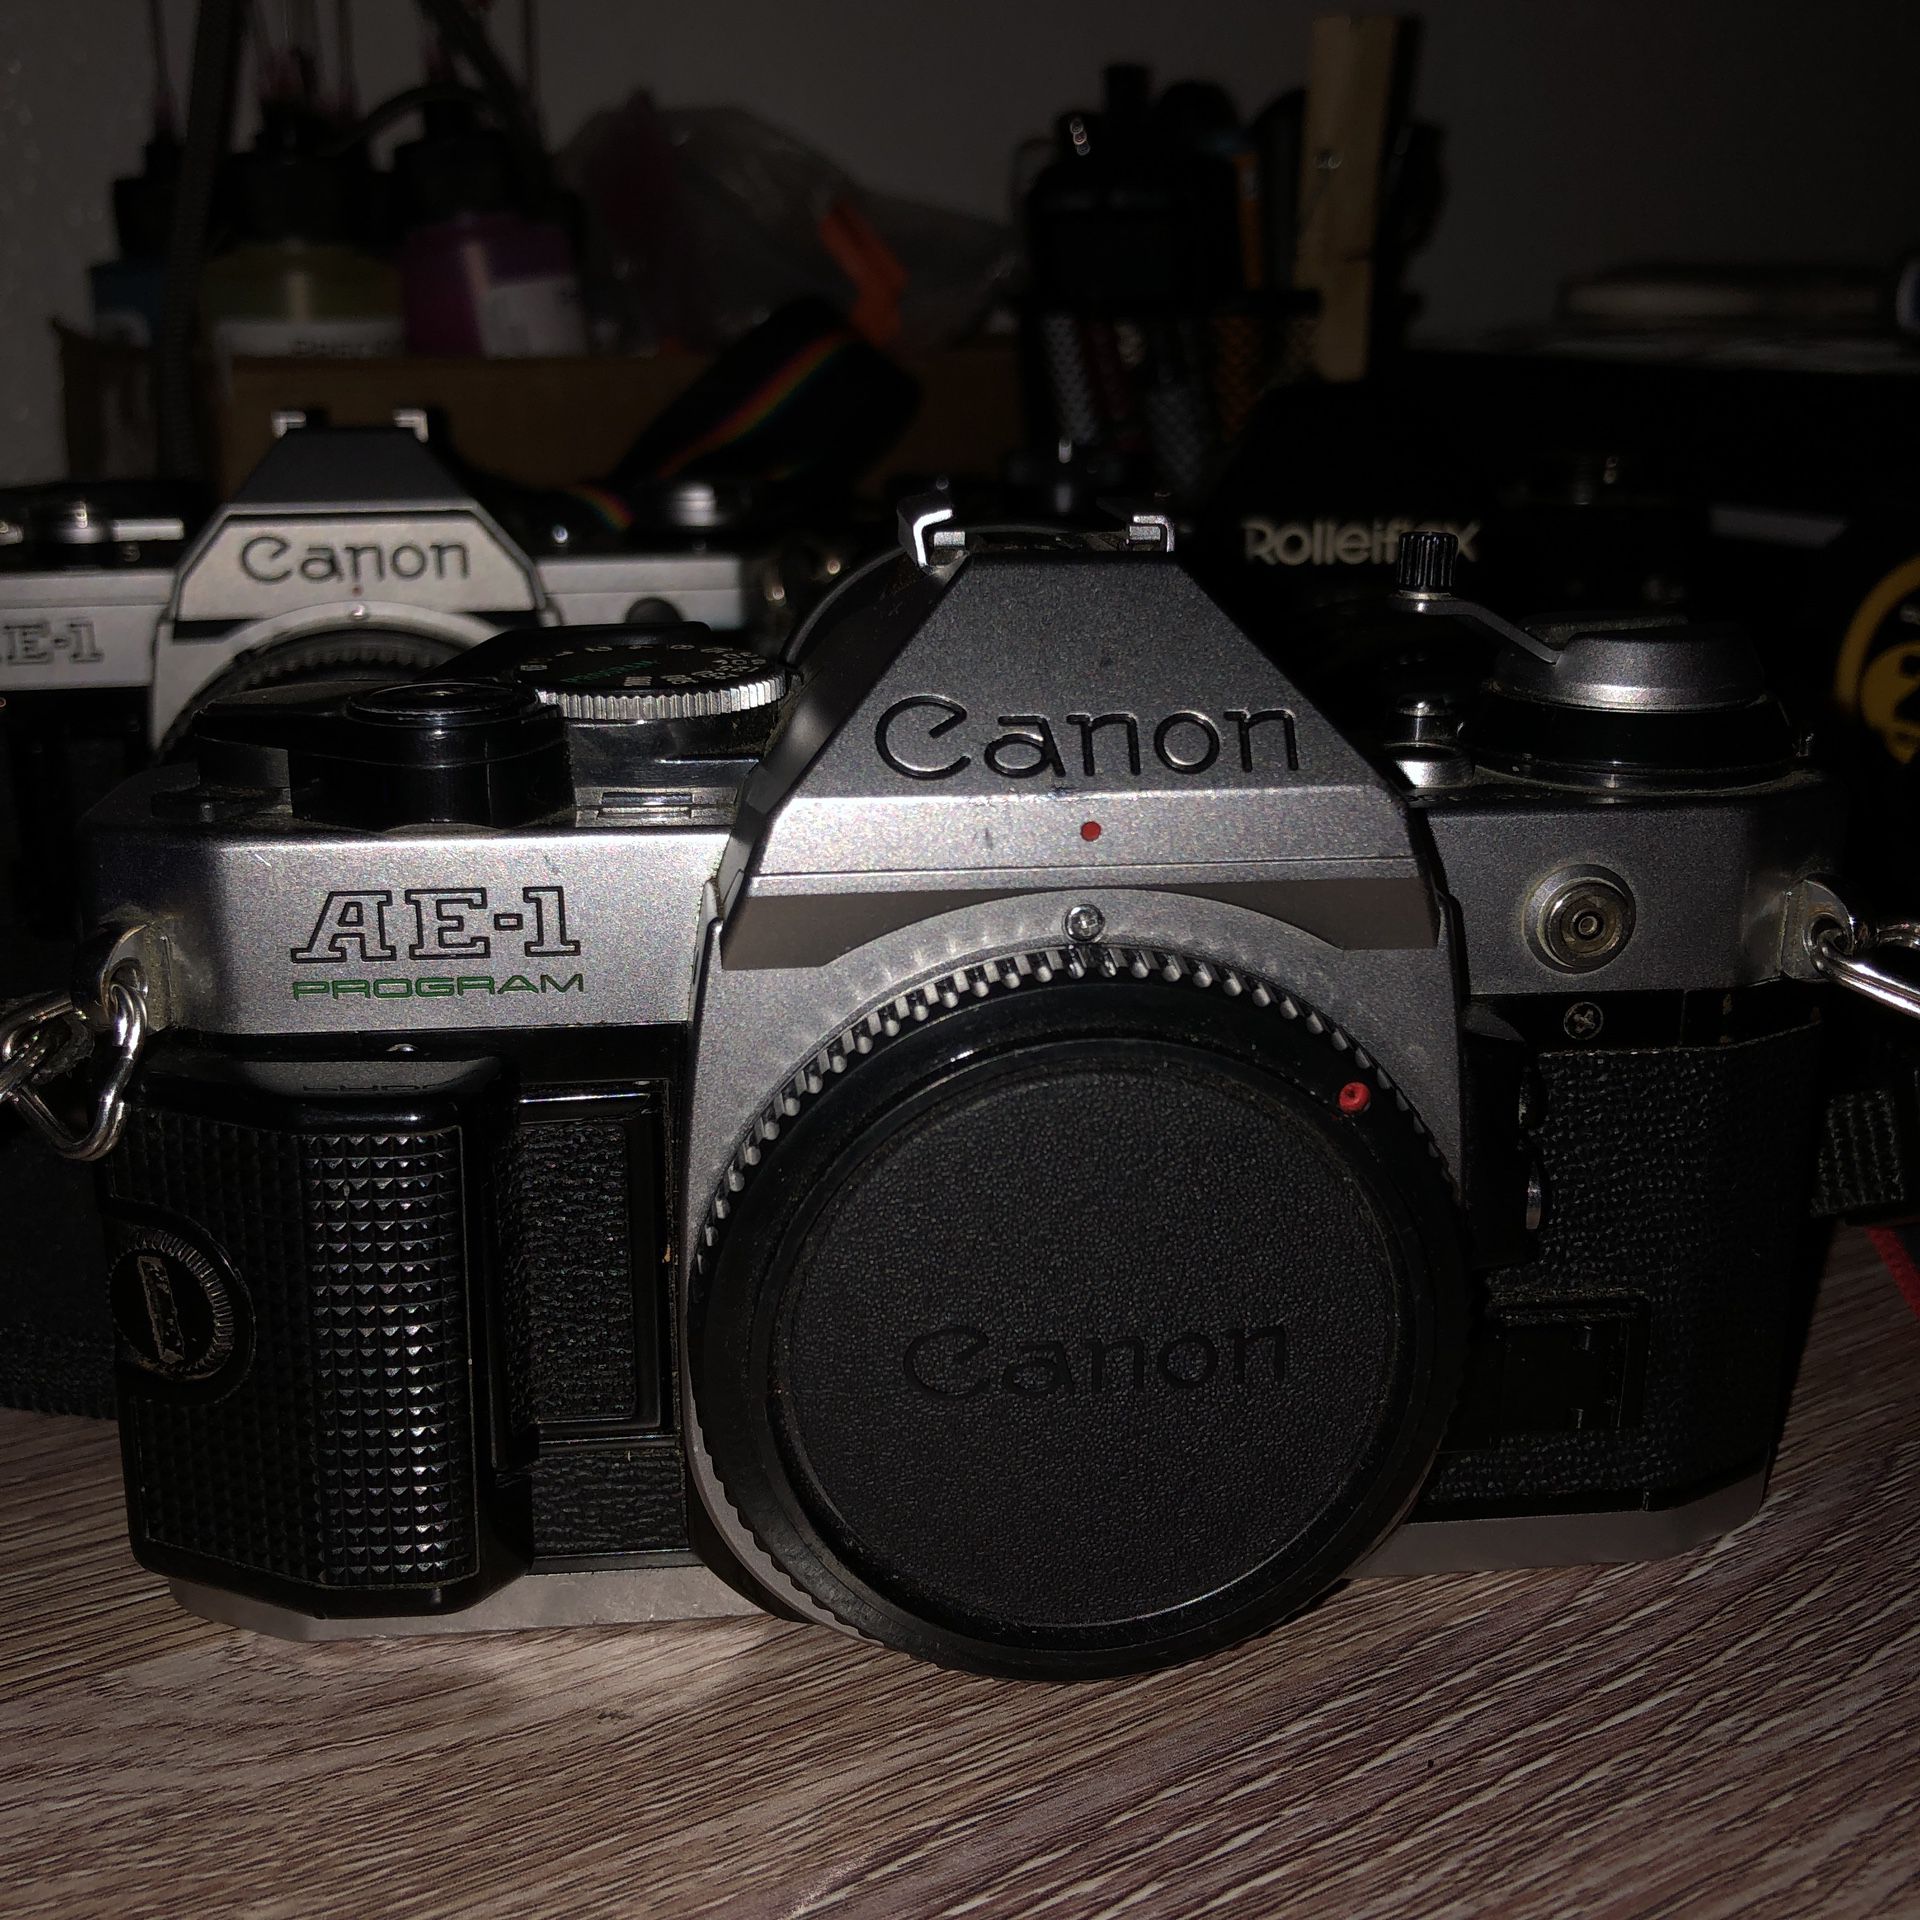 Canon ae-1 35mm film camera